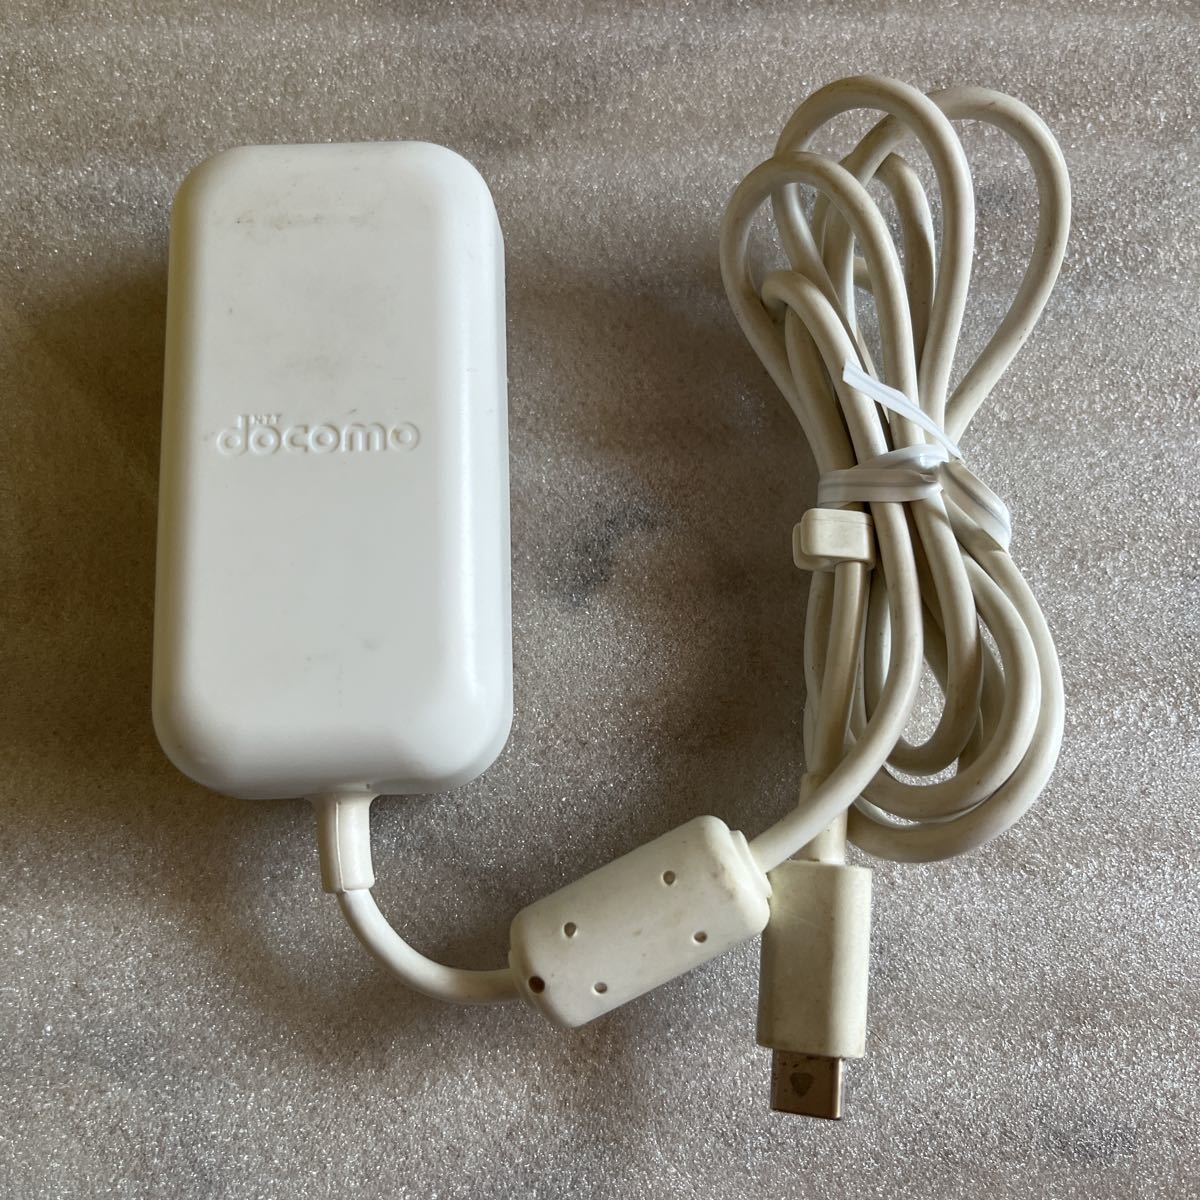  DoCoMo оригинальный AC адаптор 07 Type C USB-C docomo смартфон смартфон USB источник питания розетка Android Android зарядное устройство код USBC